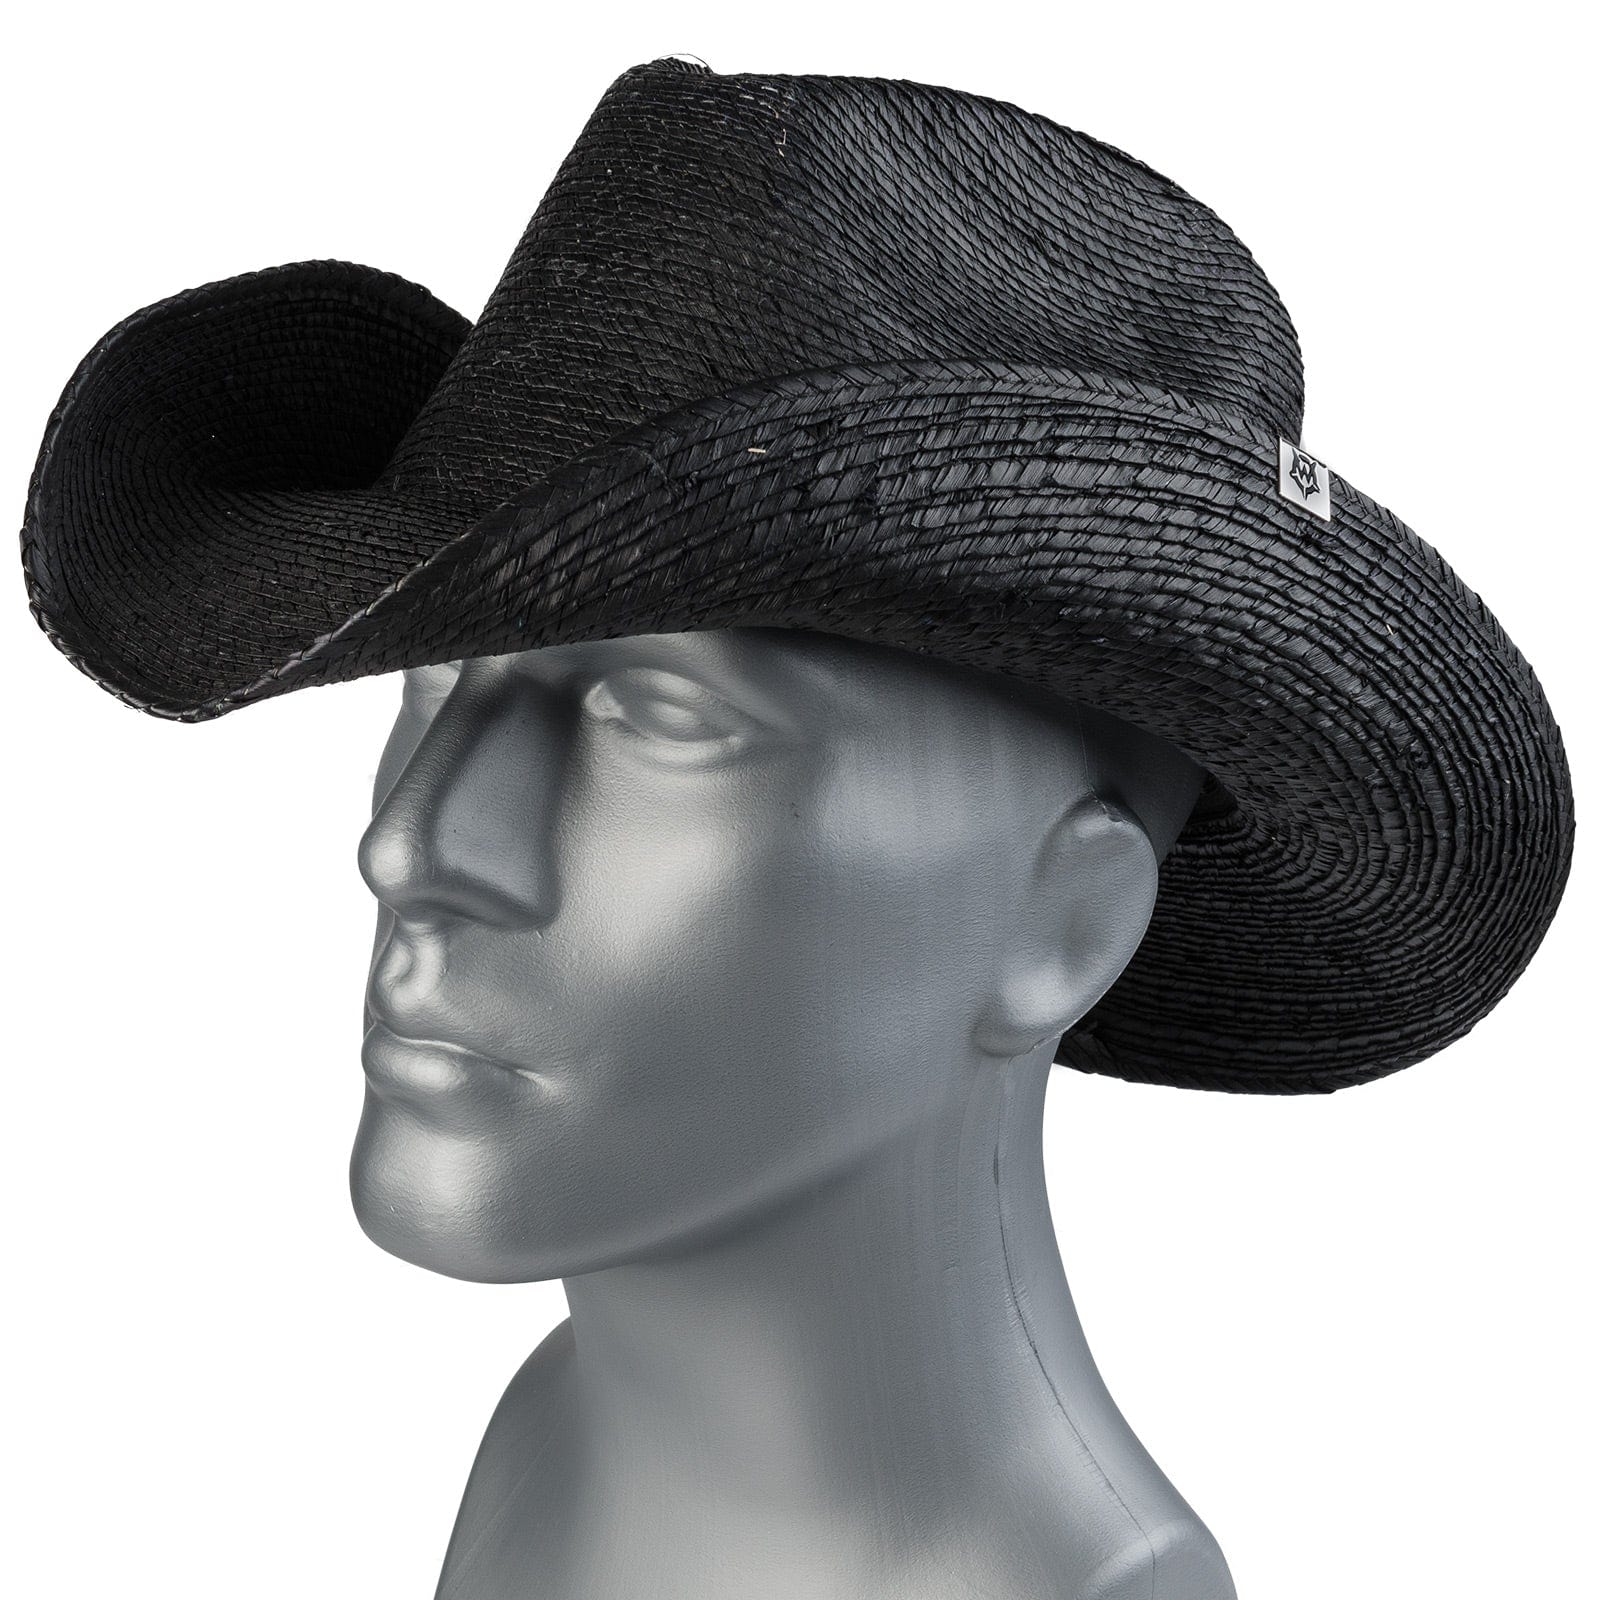 Wornstar Clothing Hat Hellrider Hat - Black